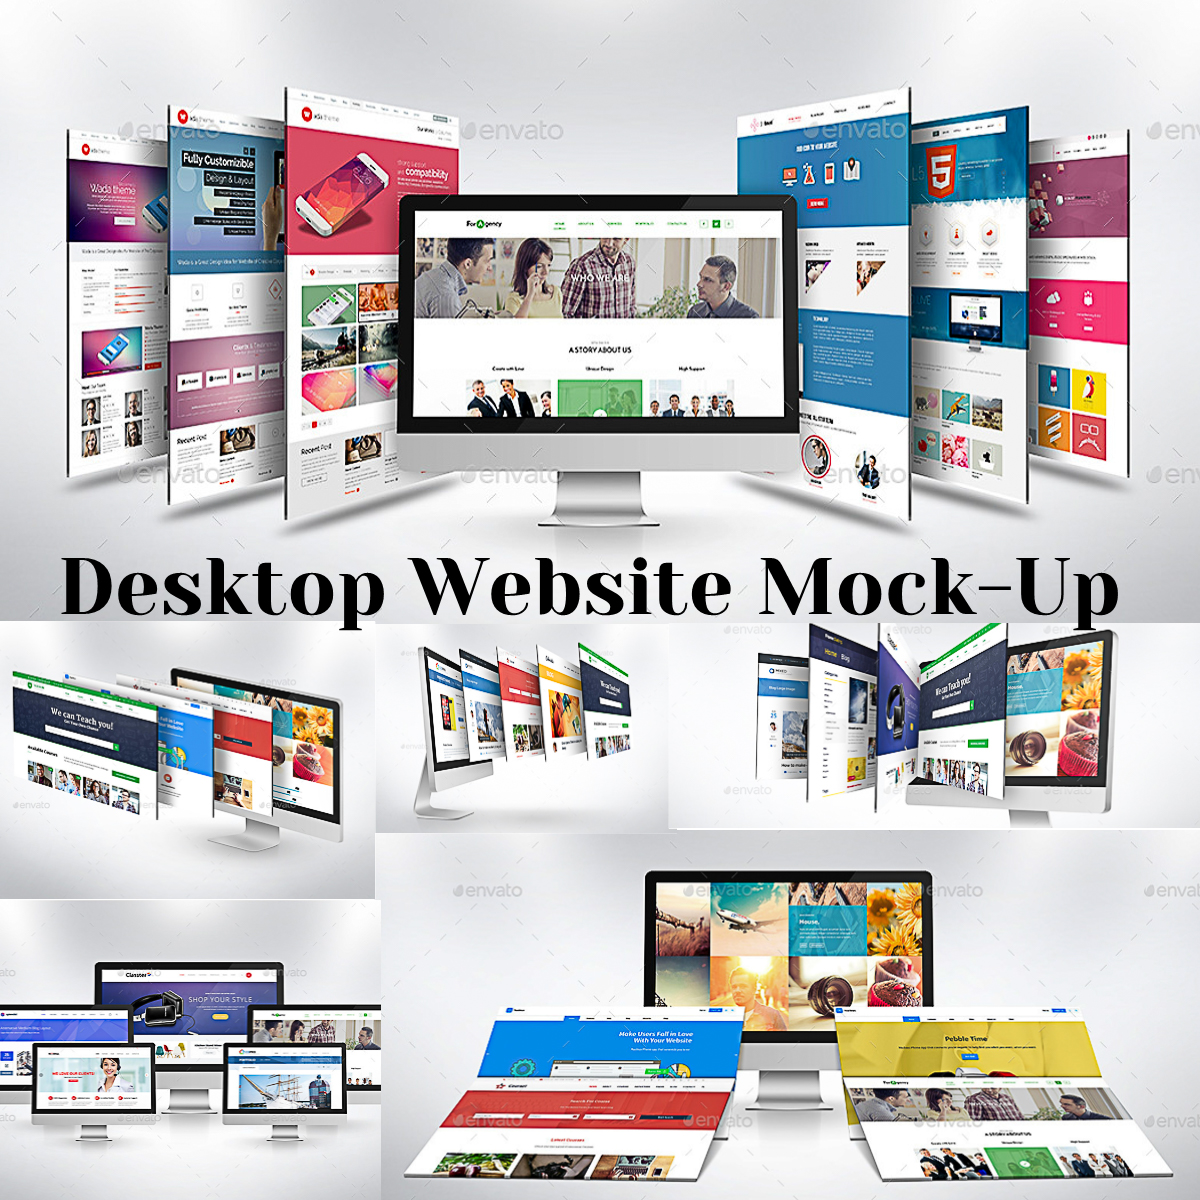 Desktop Website Mockup | Free download